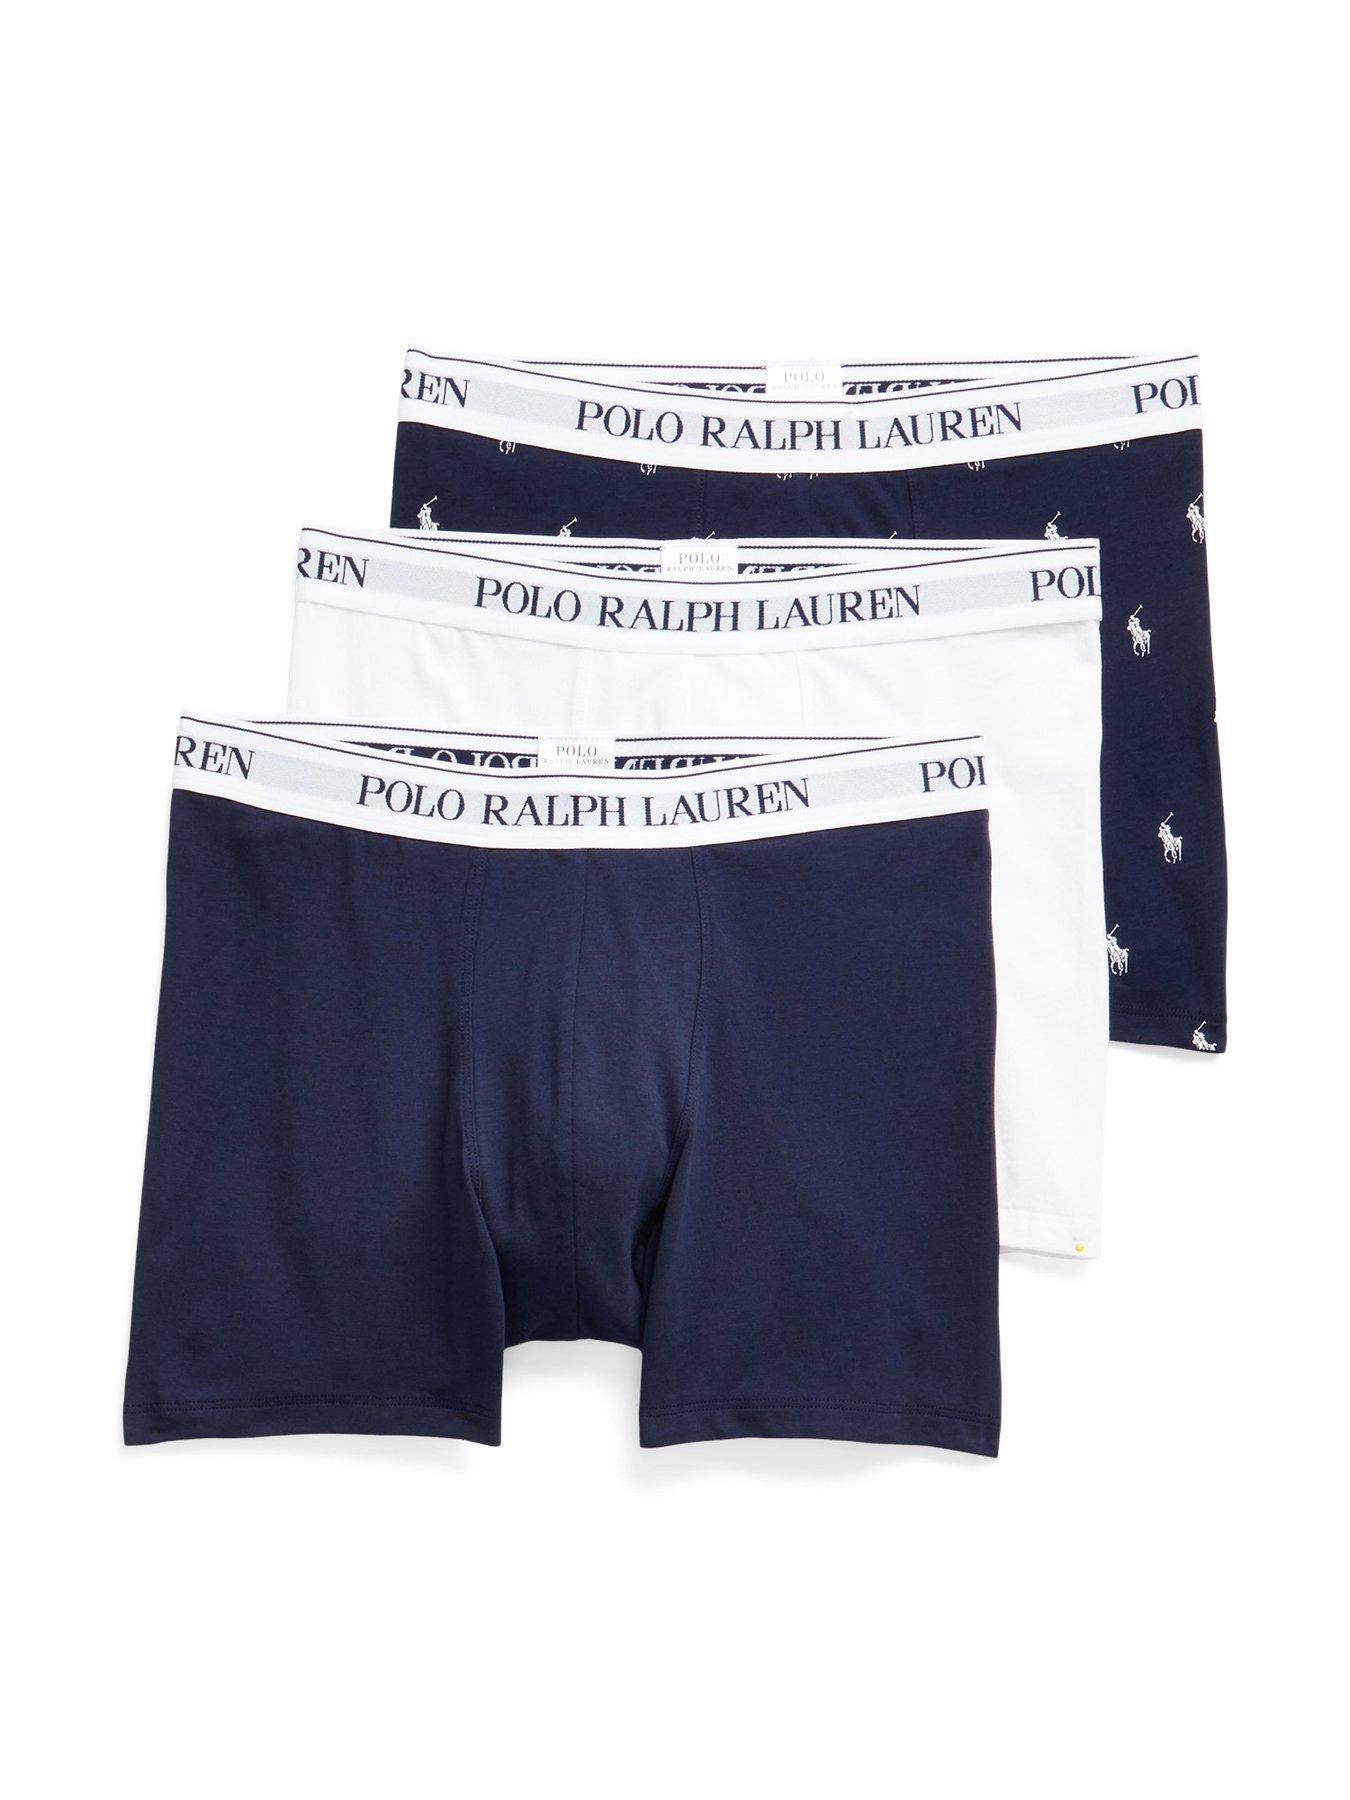 $42 Calvin Klein Underwear Men White CK U3019 Cotton Classic Boxer Brief  Size S